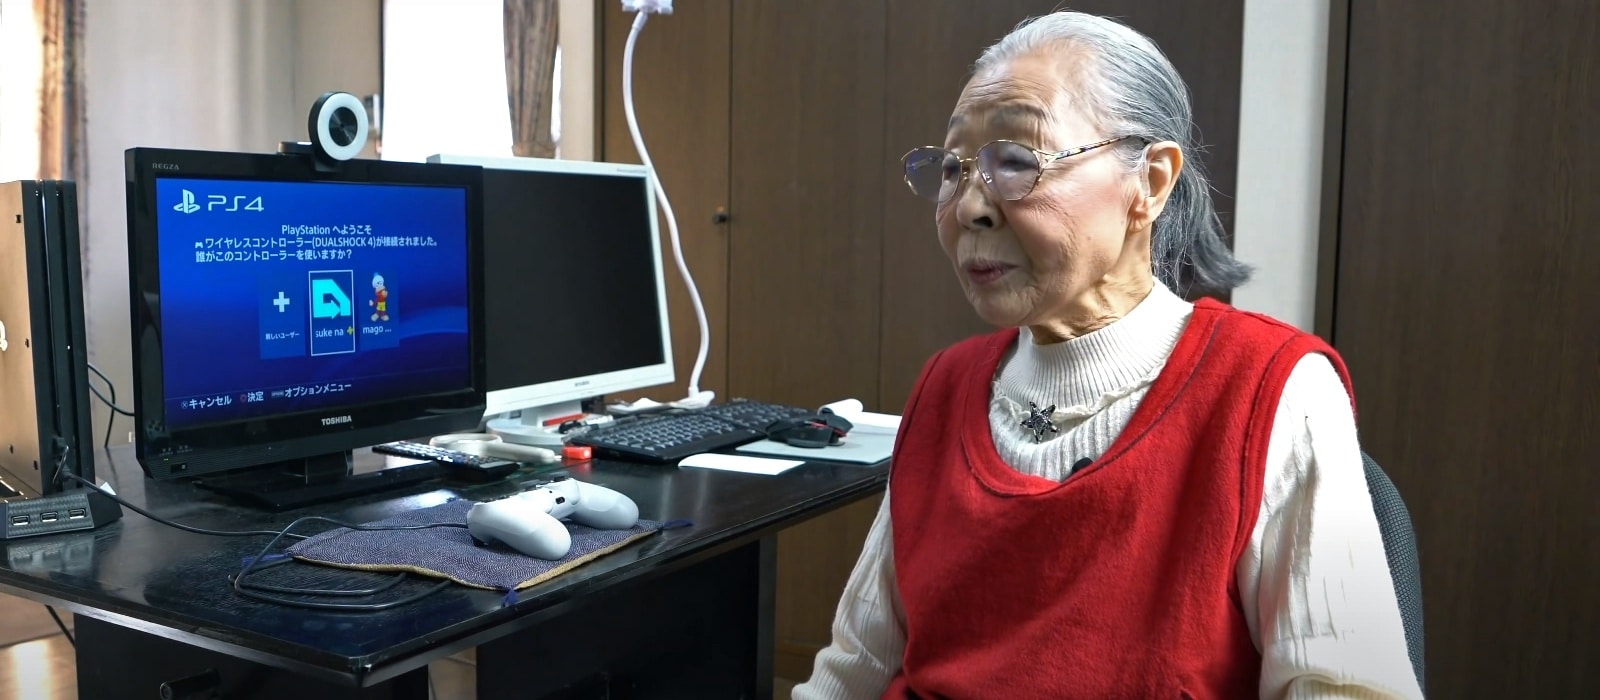 90-летняя бабушка cтала самым взрослым геймером на YouTube и попала в Книгу рекордов Гиннесса